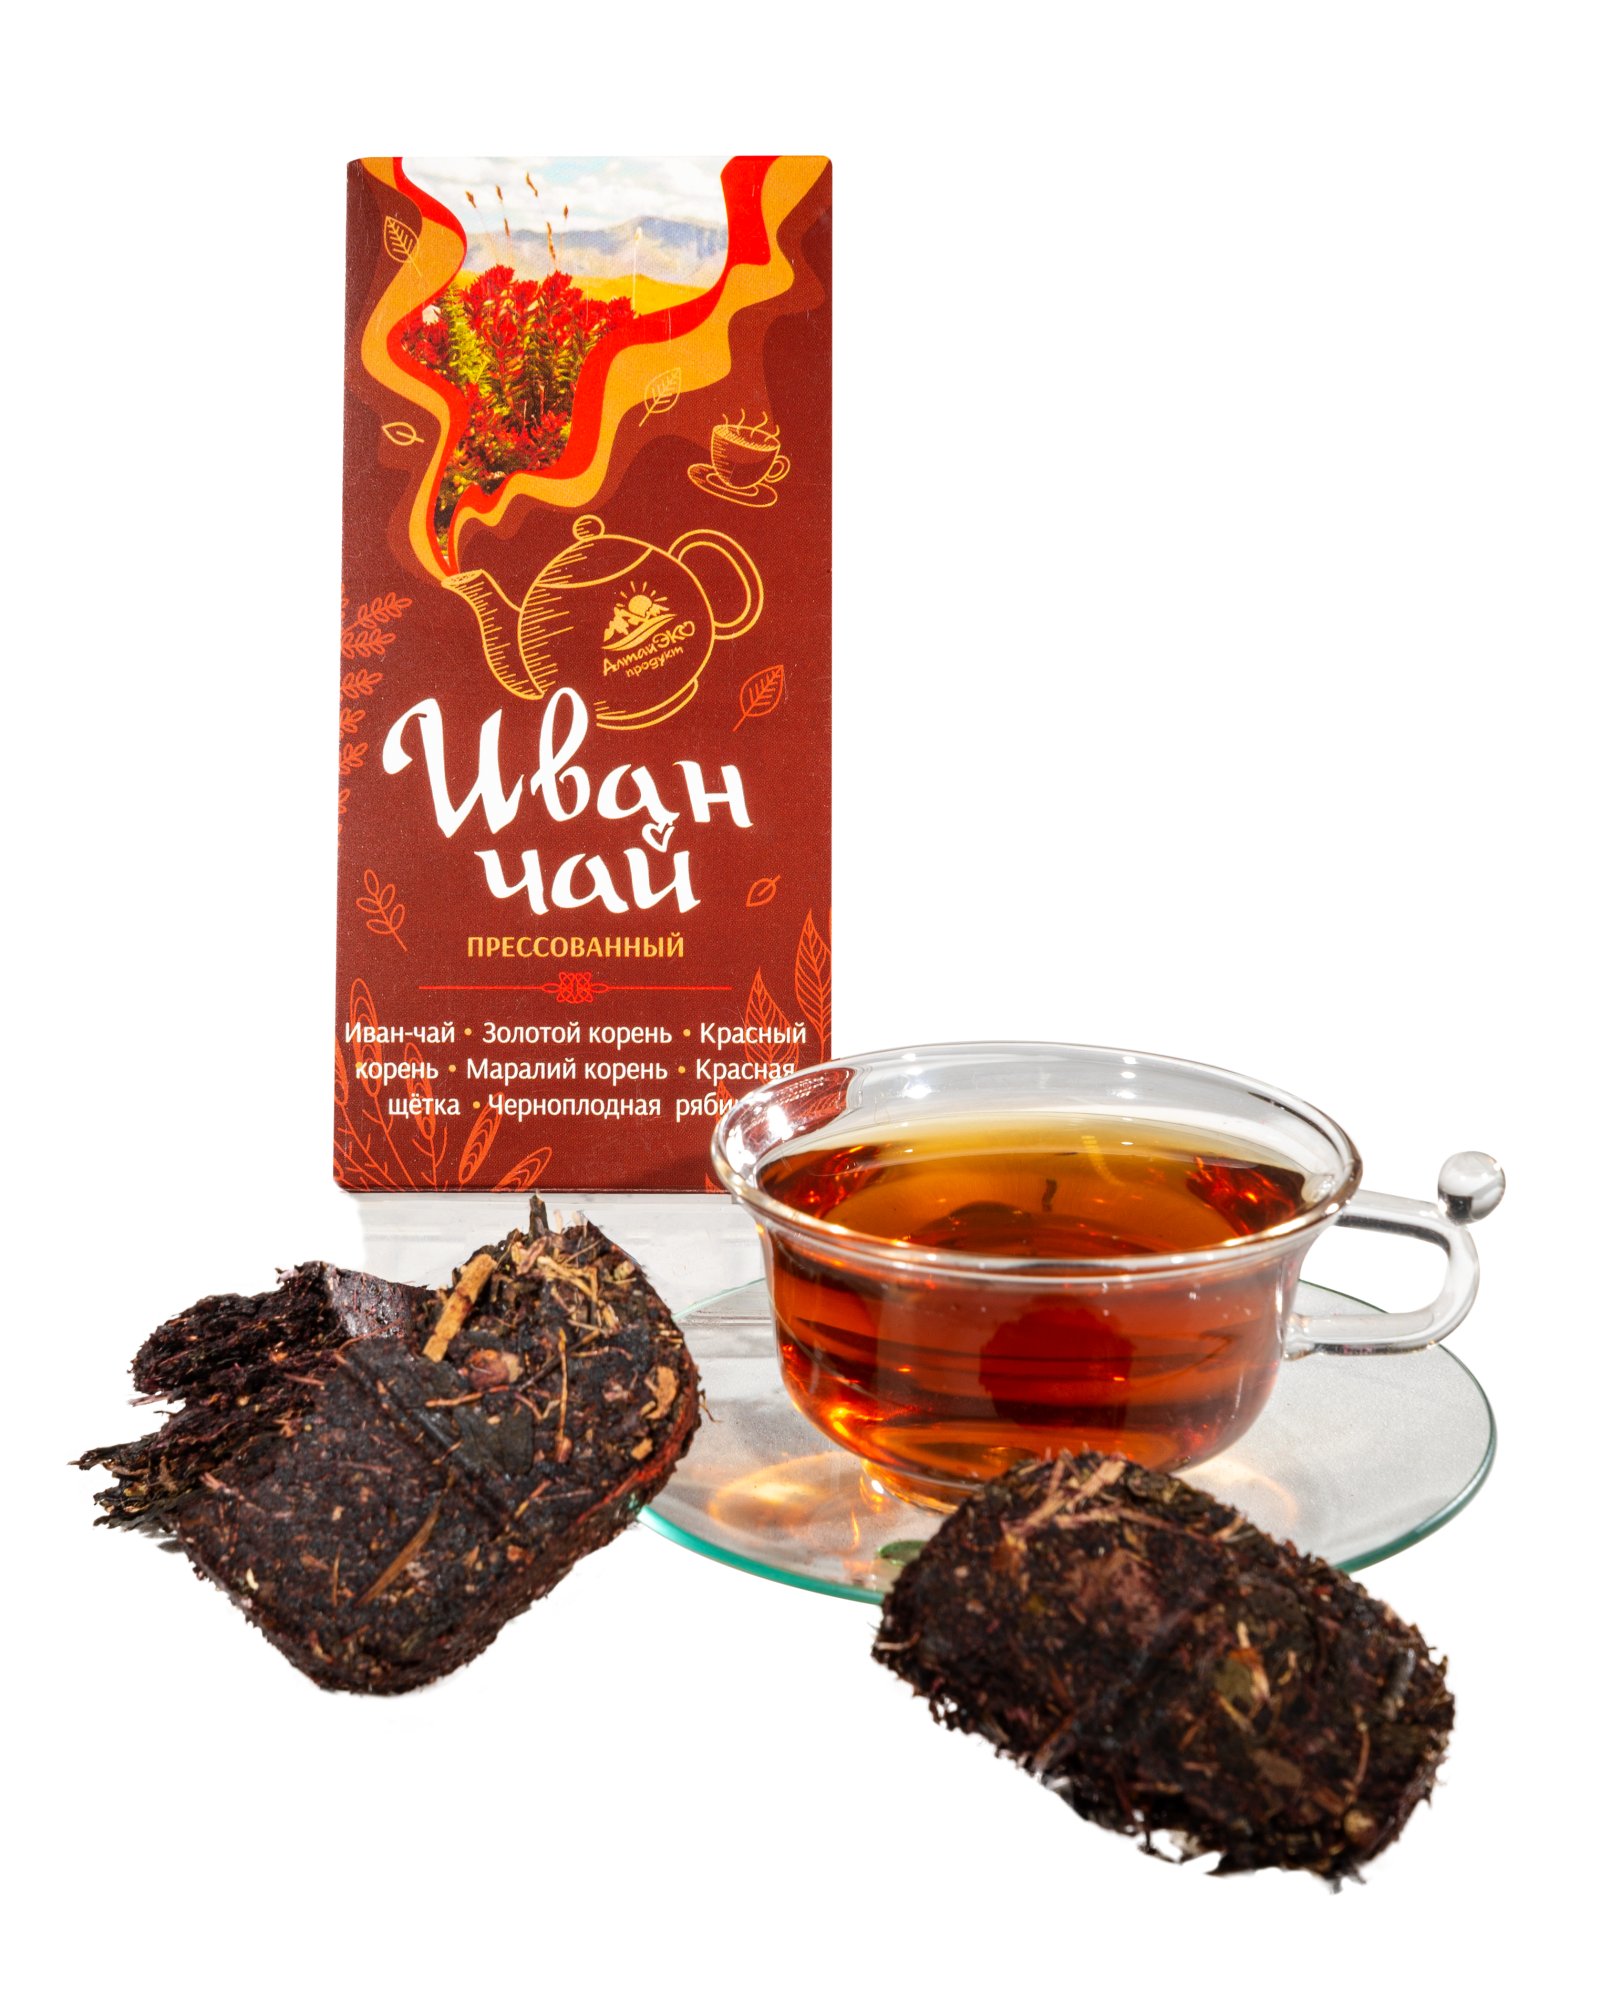 Иван-чай прессованный с золотым,красным и маральим корнем,красной щеткой,черноплодной рябиной 50гр